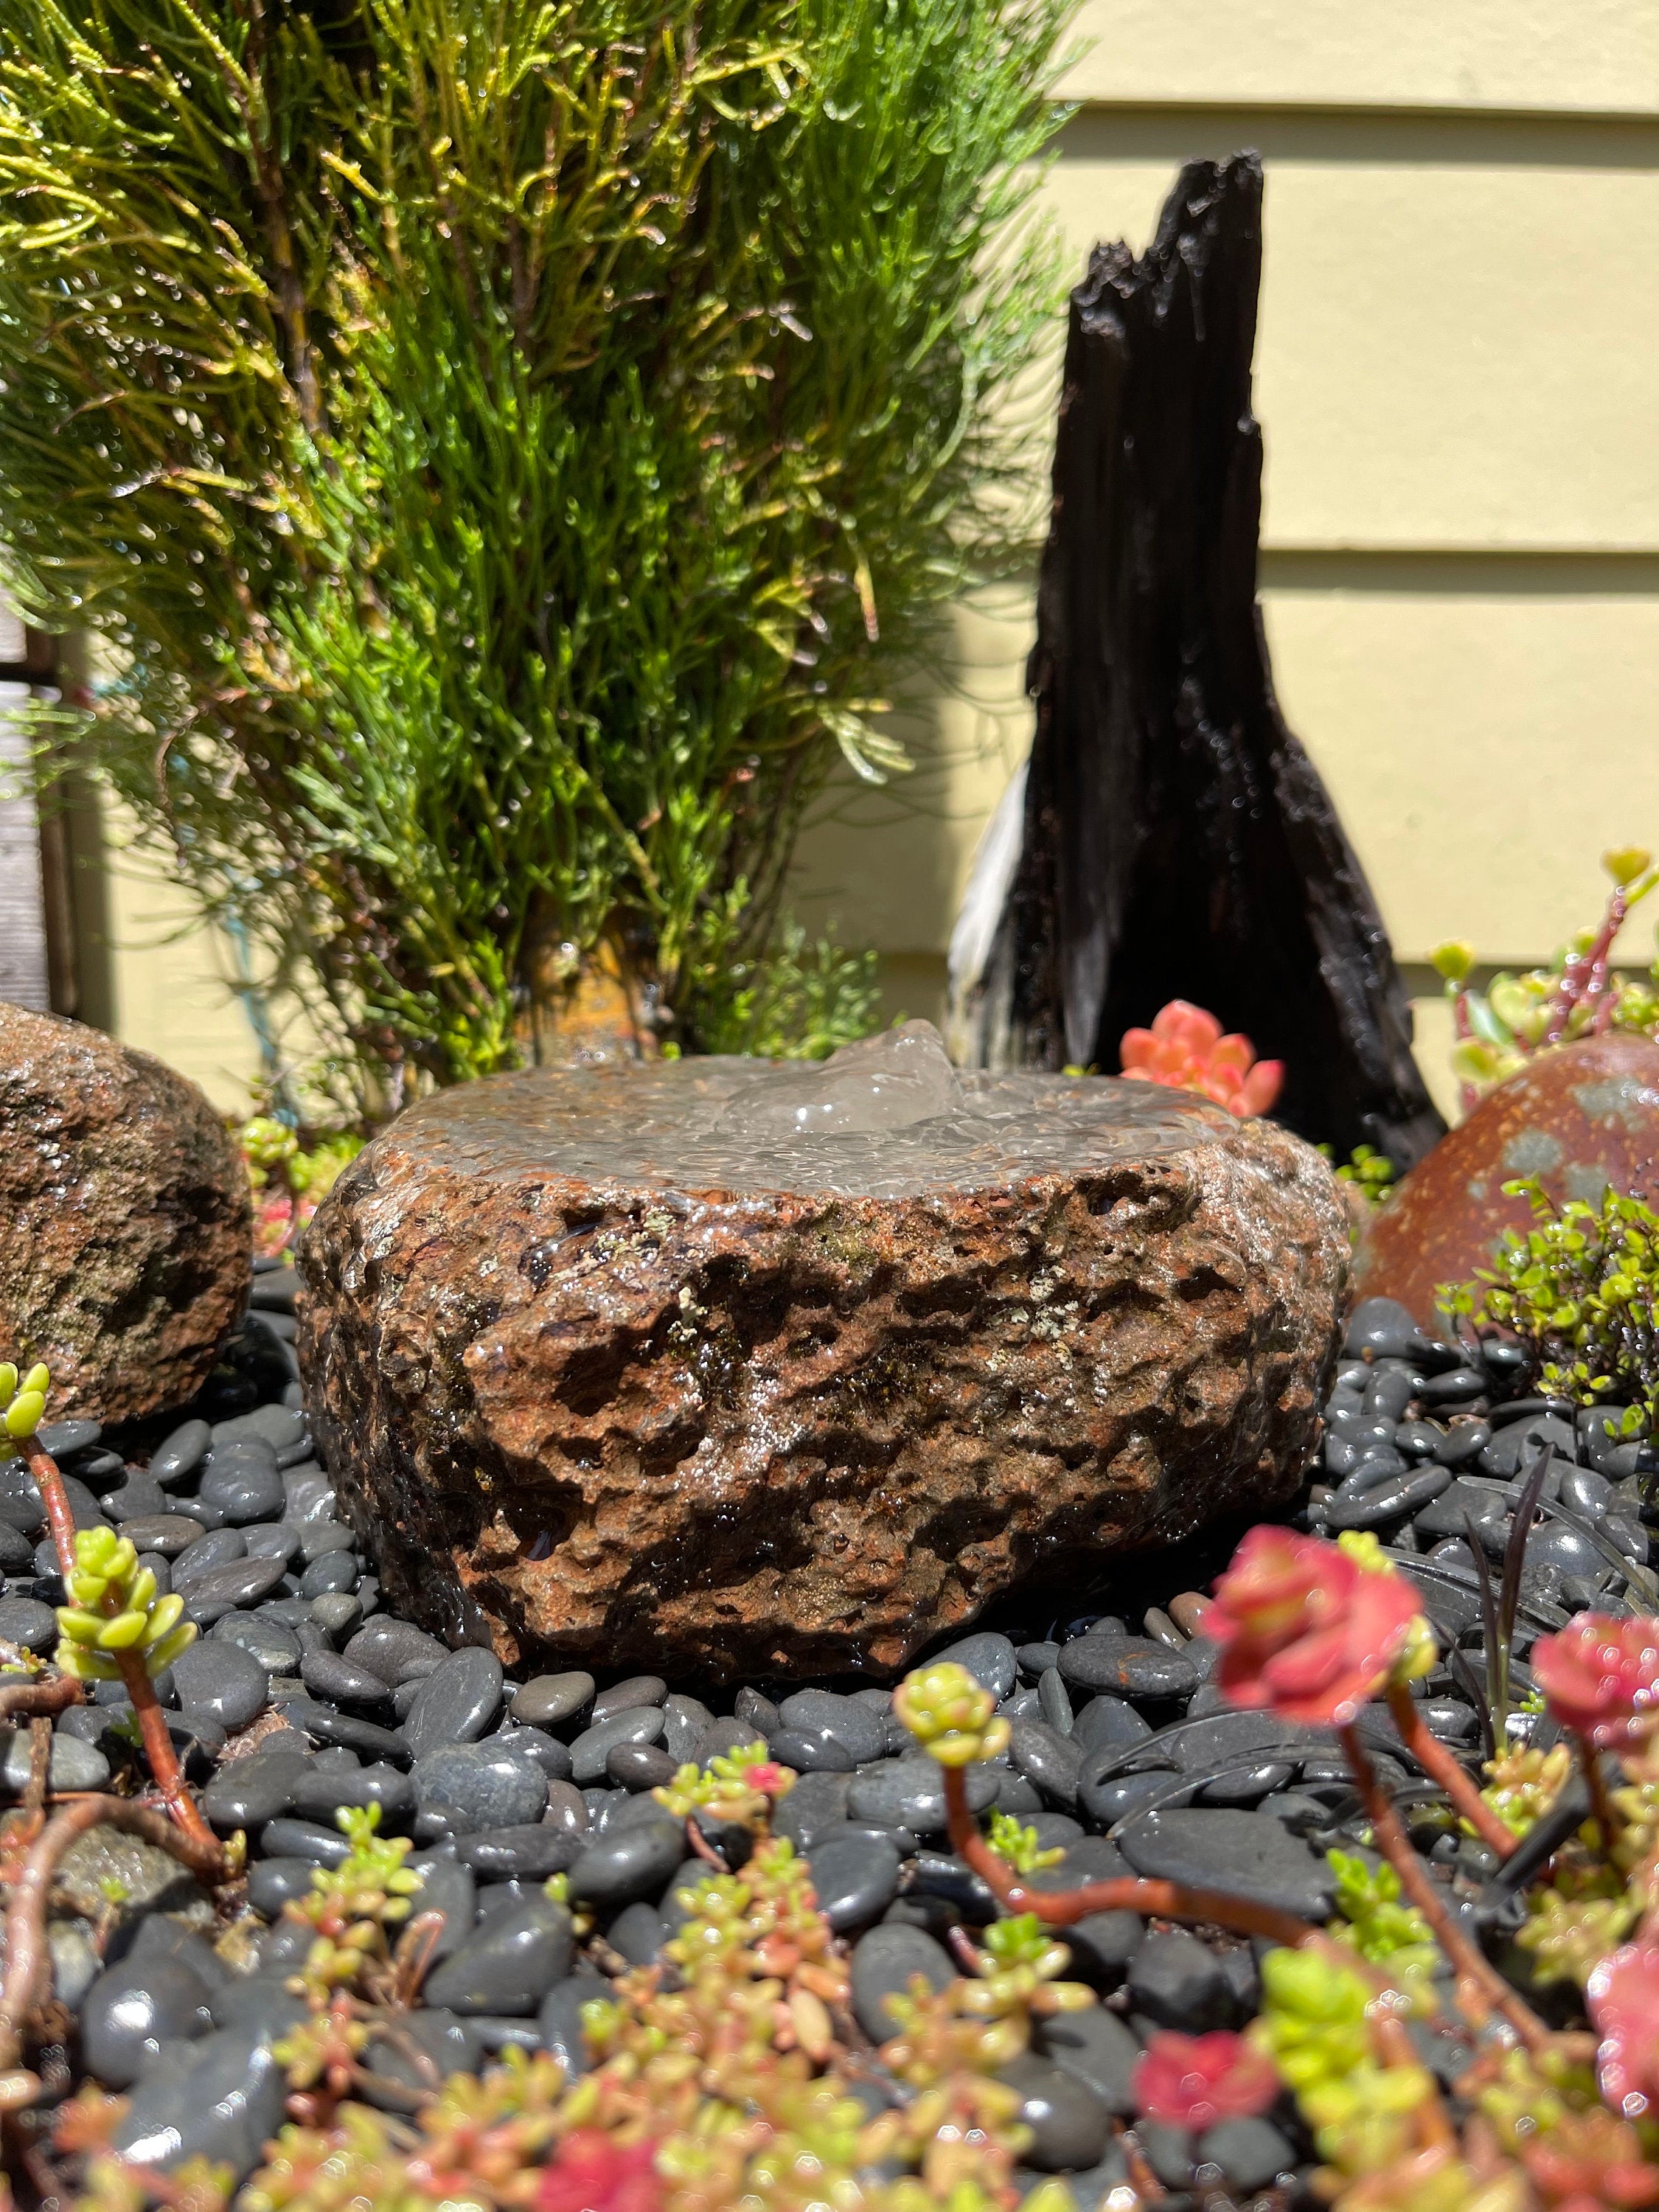 Rock Water Fountain | Bird Bath | Garden Décor | Handmade | Garden Ornament | Water Feature |You can also use solar pump